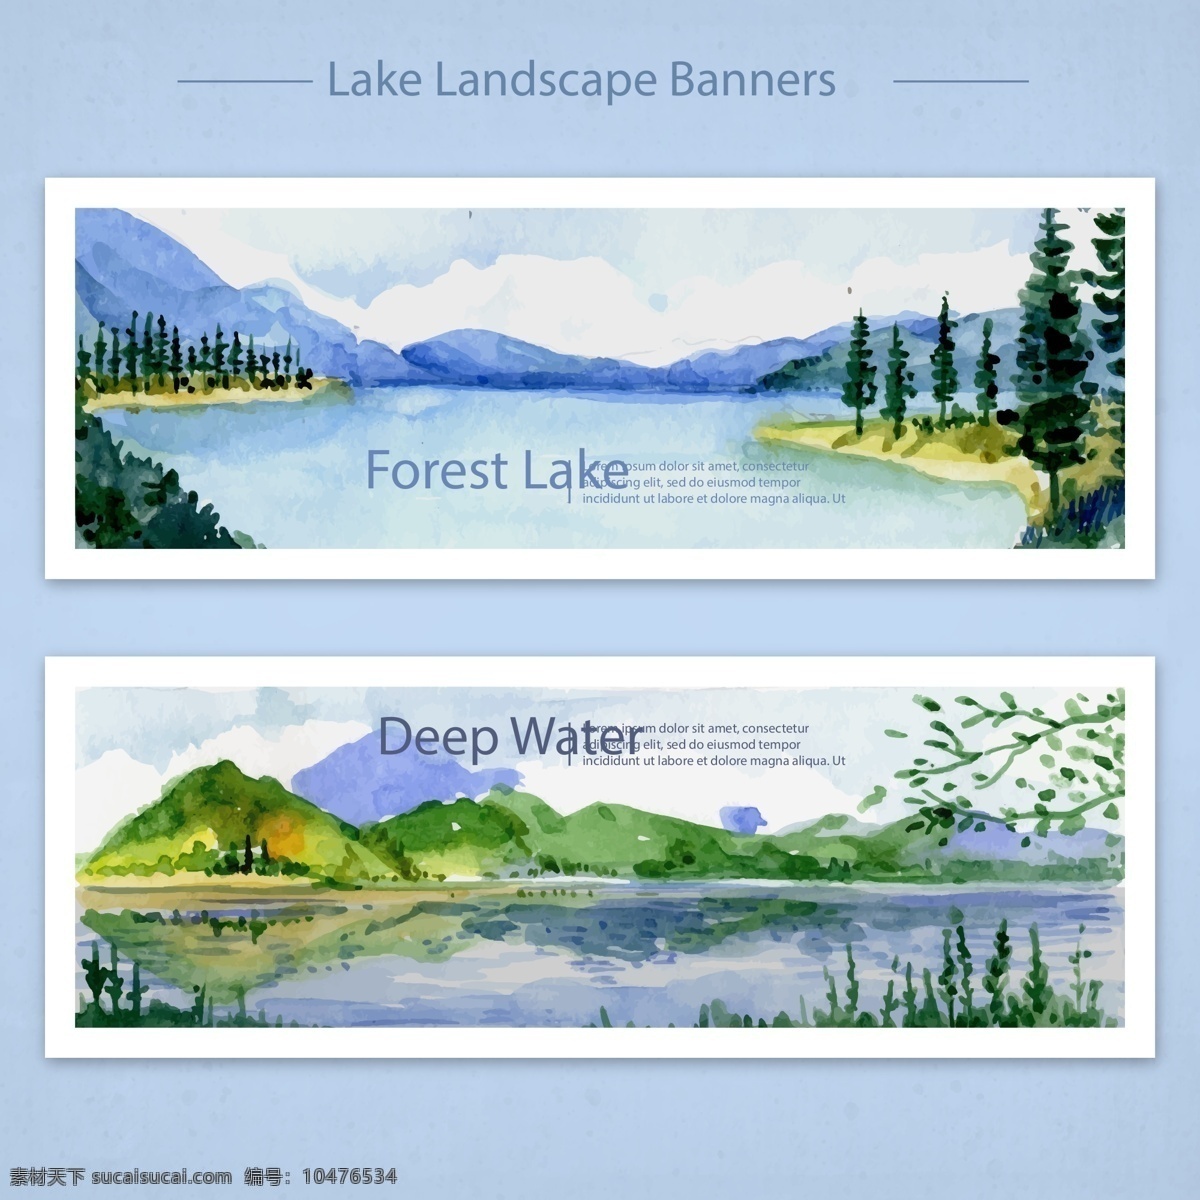 森林 湖泊 清静 矢量 大山 高山 矢量素材 设计素材 湖水 晴朗 平面素材